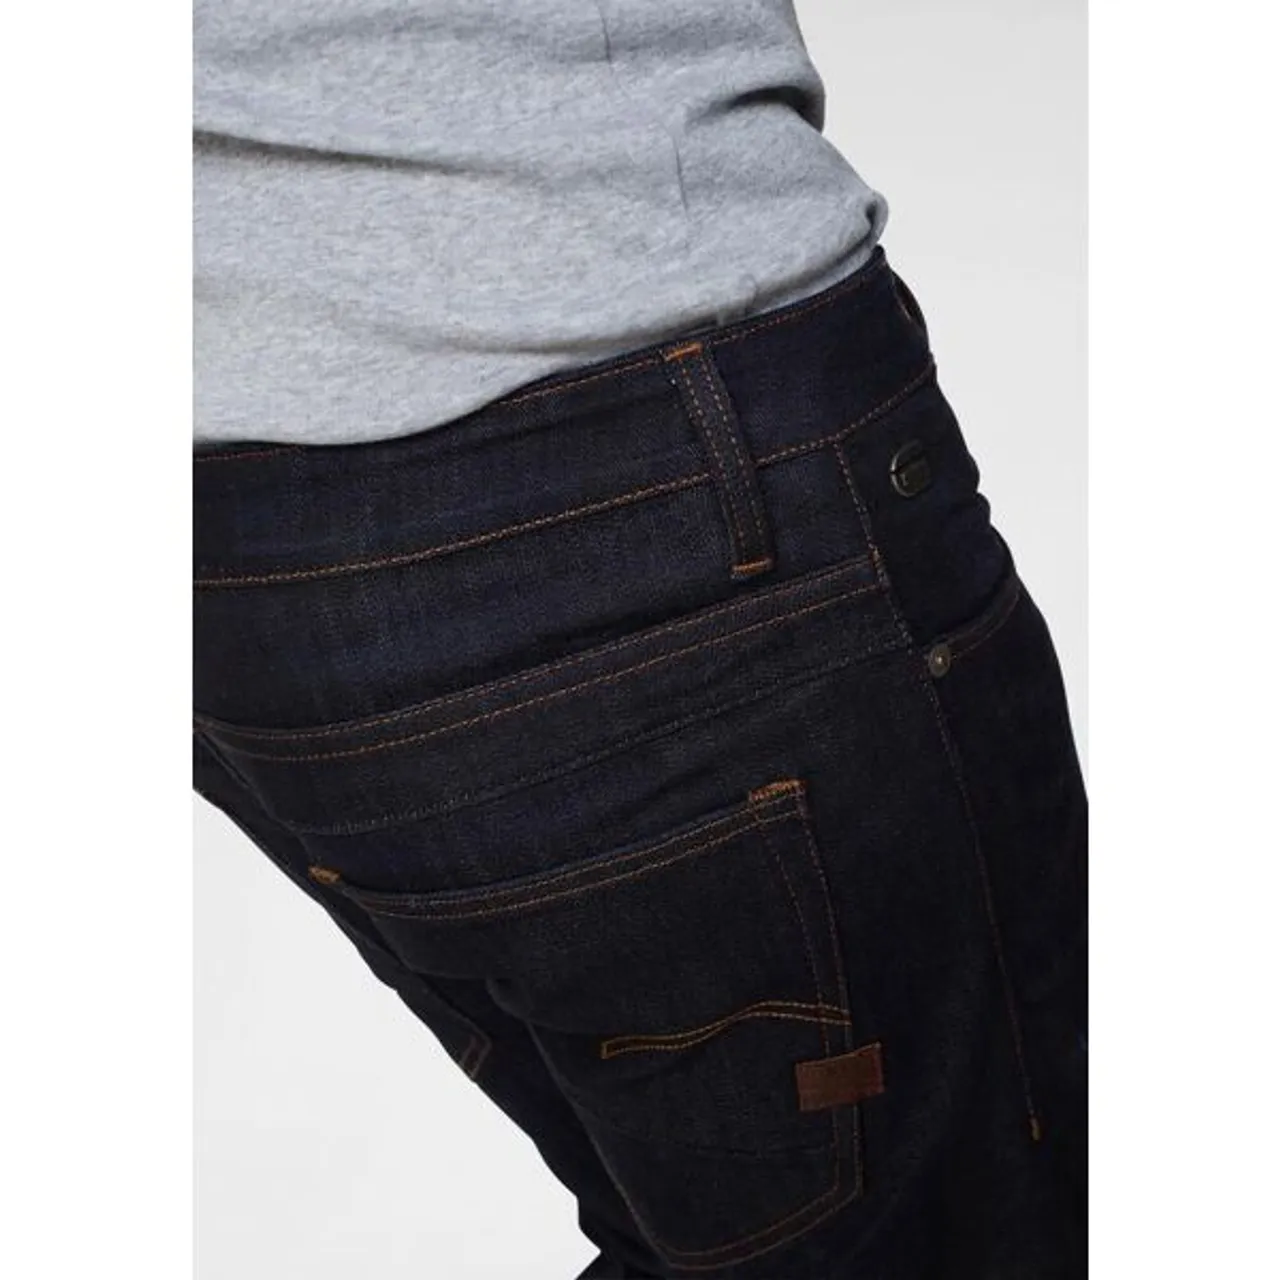 Slim-fit-Jeans G-STAR RAW "D-Staq 3D Slim Fit" Gr. 31, Länge 34, blau (dark, aged) Herren Jeans Slim Fit